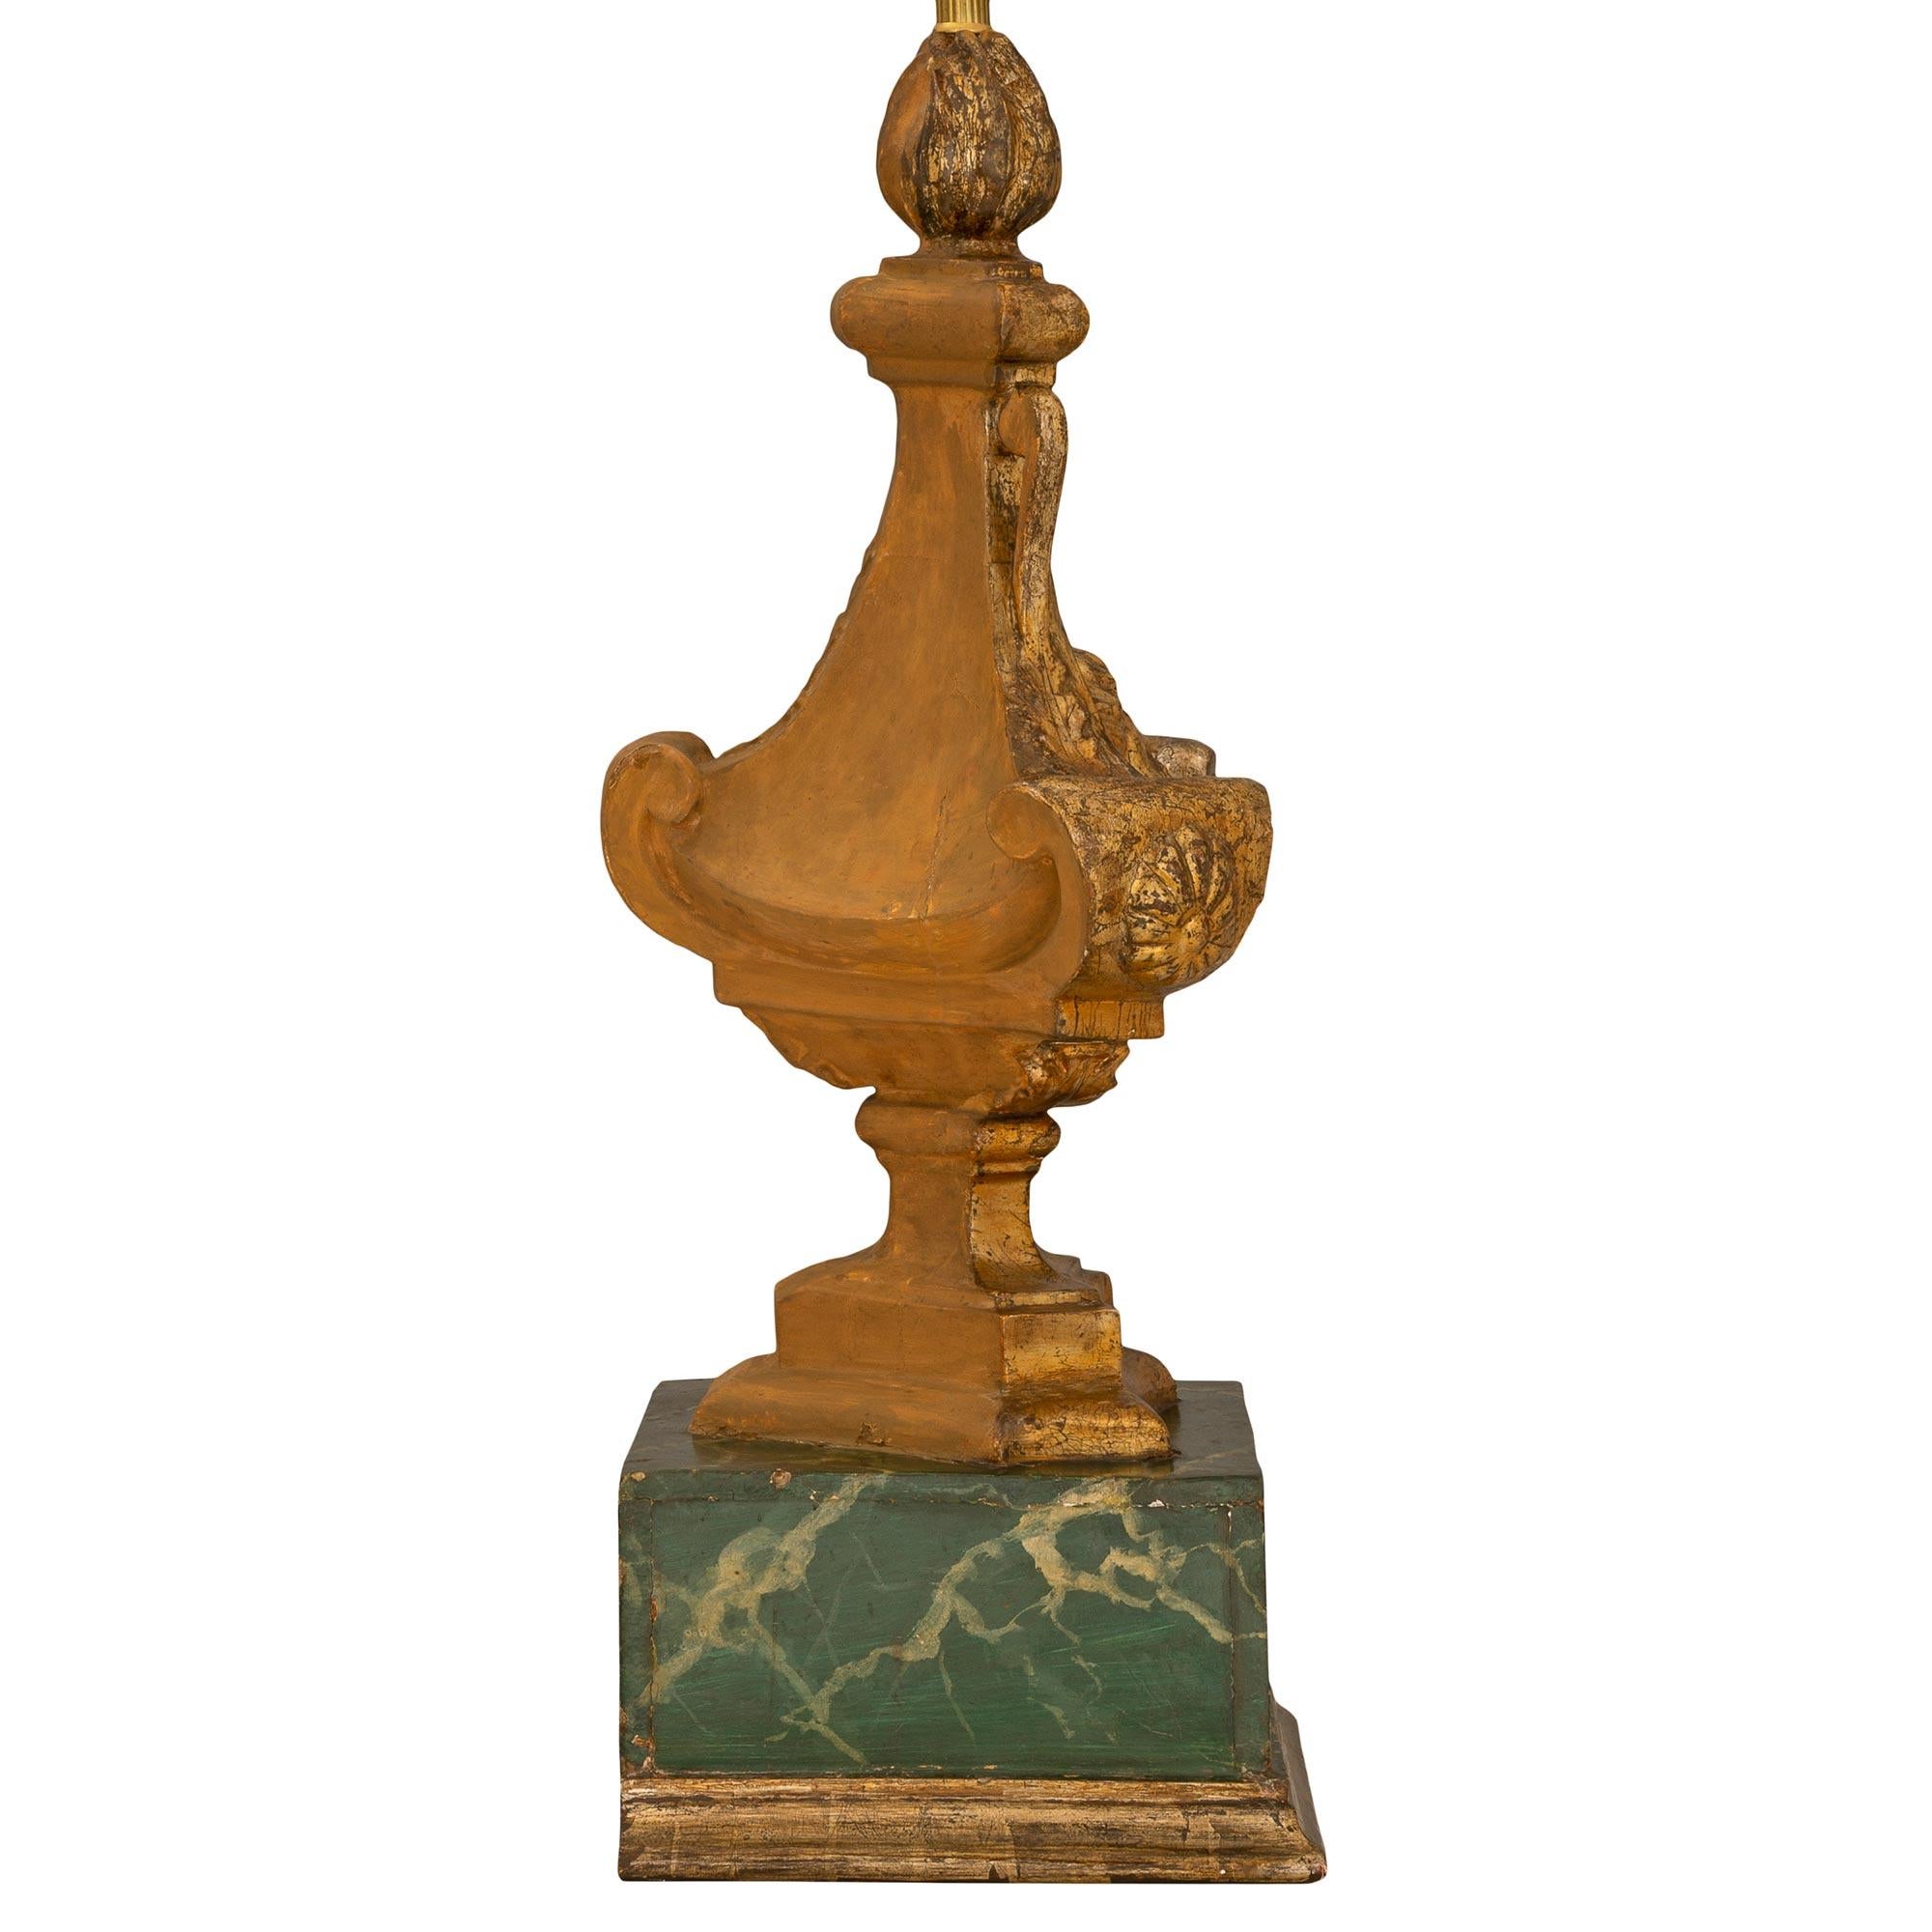 Ein auffallendes Paar italienischer Mekka-Lampen aus dem 18. Jahrhundert, die mit Marmorimitationen bemalt sind. Jede Leuchte wird von einem quadratischen, wunderschön ausgeführten Sockel aus künstlich bemaltem Marmor mit einem fein gesprenkelten